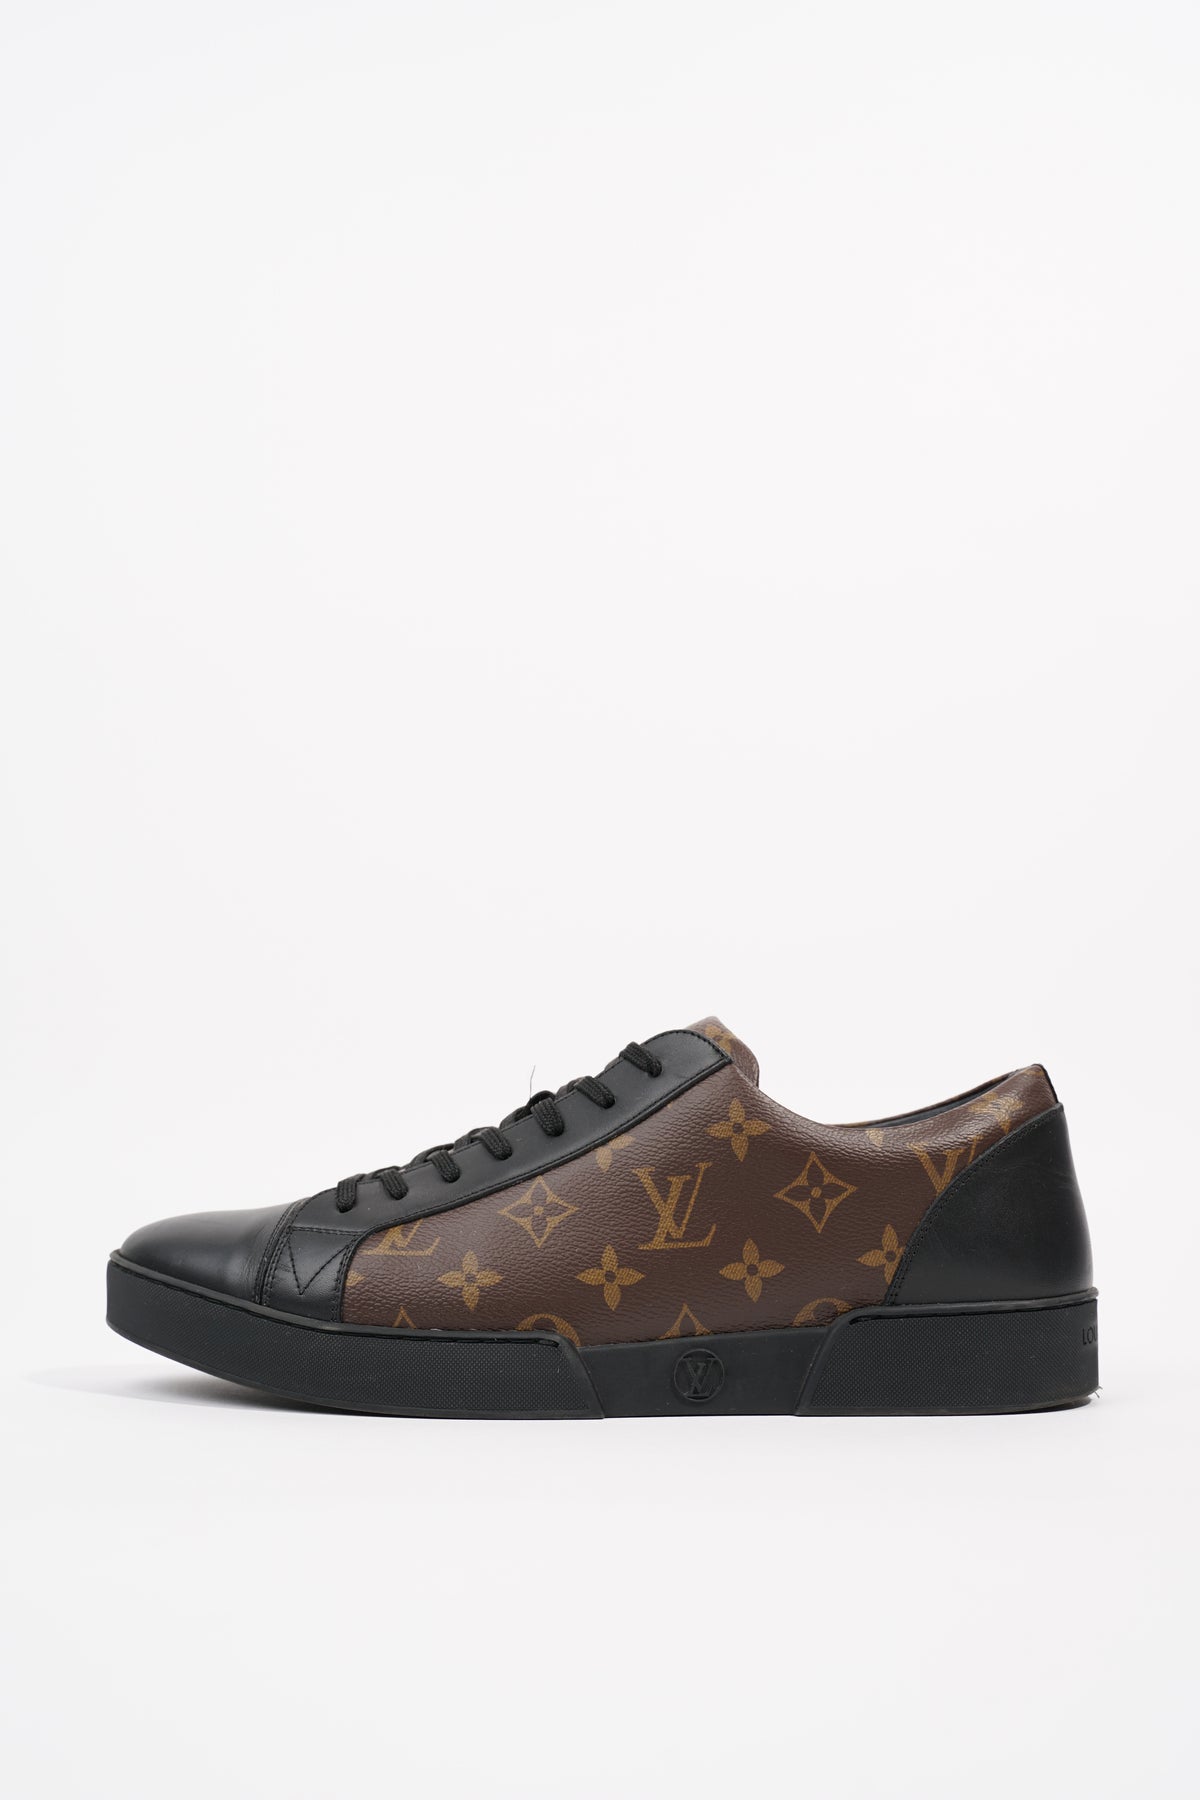 Louis Vuitton Black Monogram Canvas Match-Up Sneaker size 6.5 US